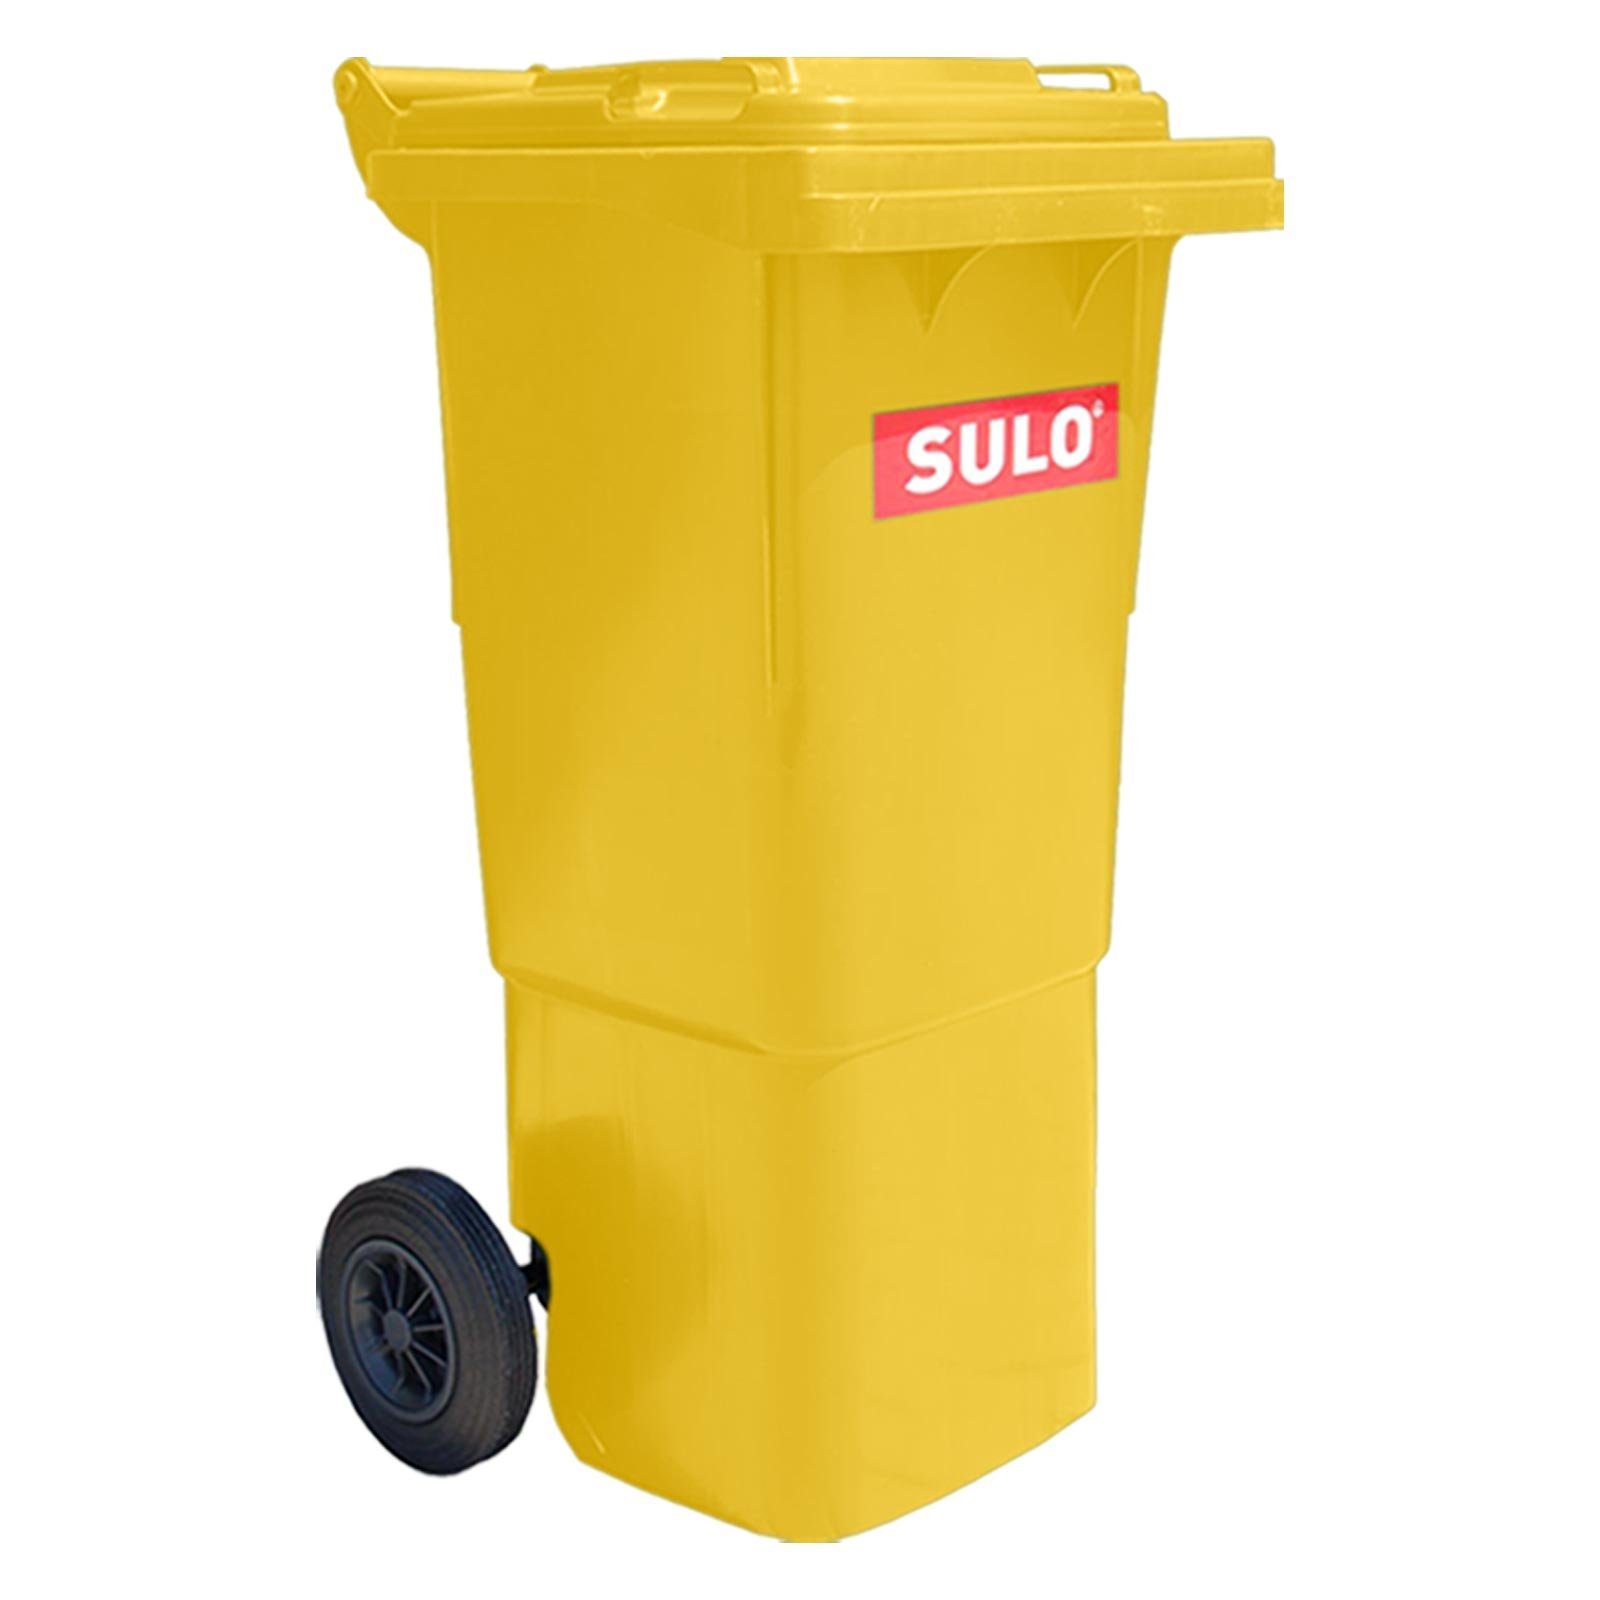 60L Mülltrennsystem Müllgroßbehälter SULO gelb